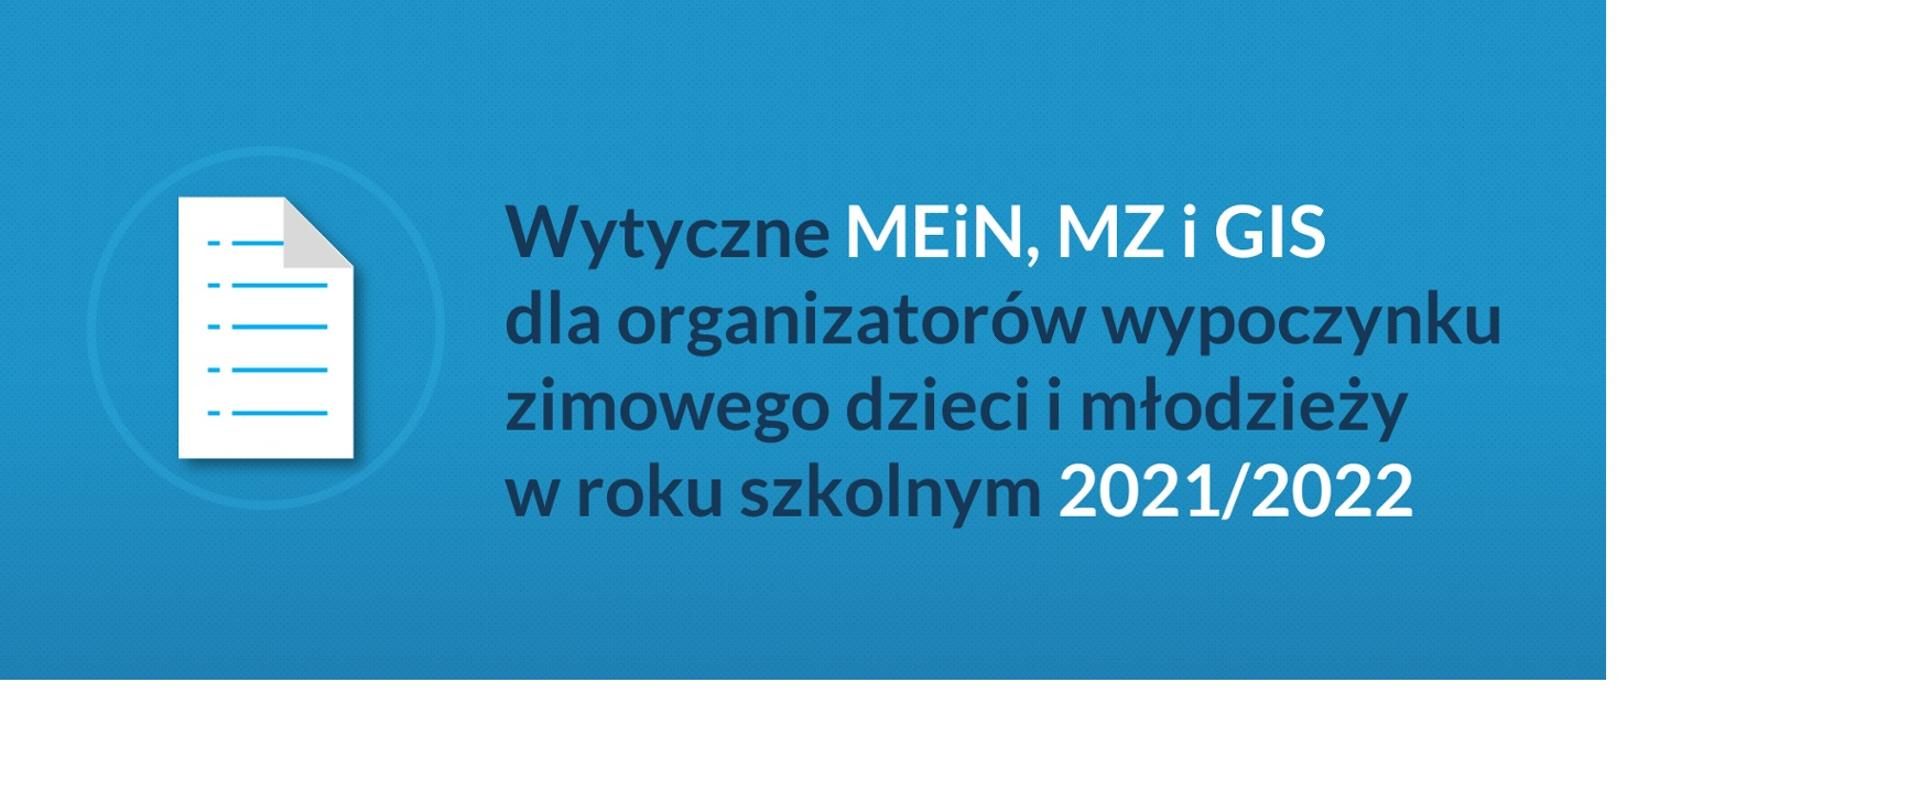 Wytyczne MEiN, MZ i GIS dla organizatorów wypoczynku zimowego dzieci i młodzieży w roku szkolnym 2021/2022